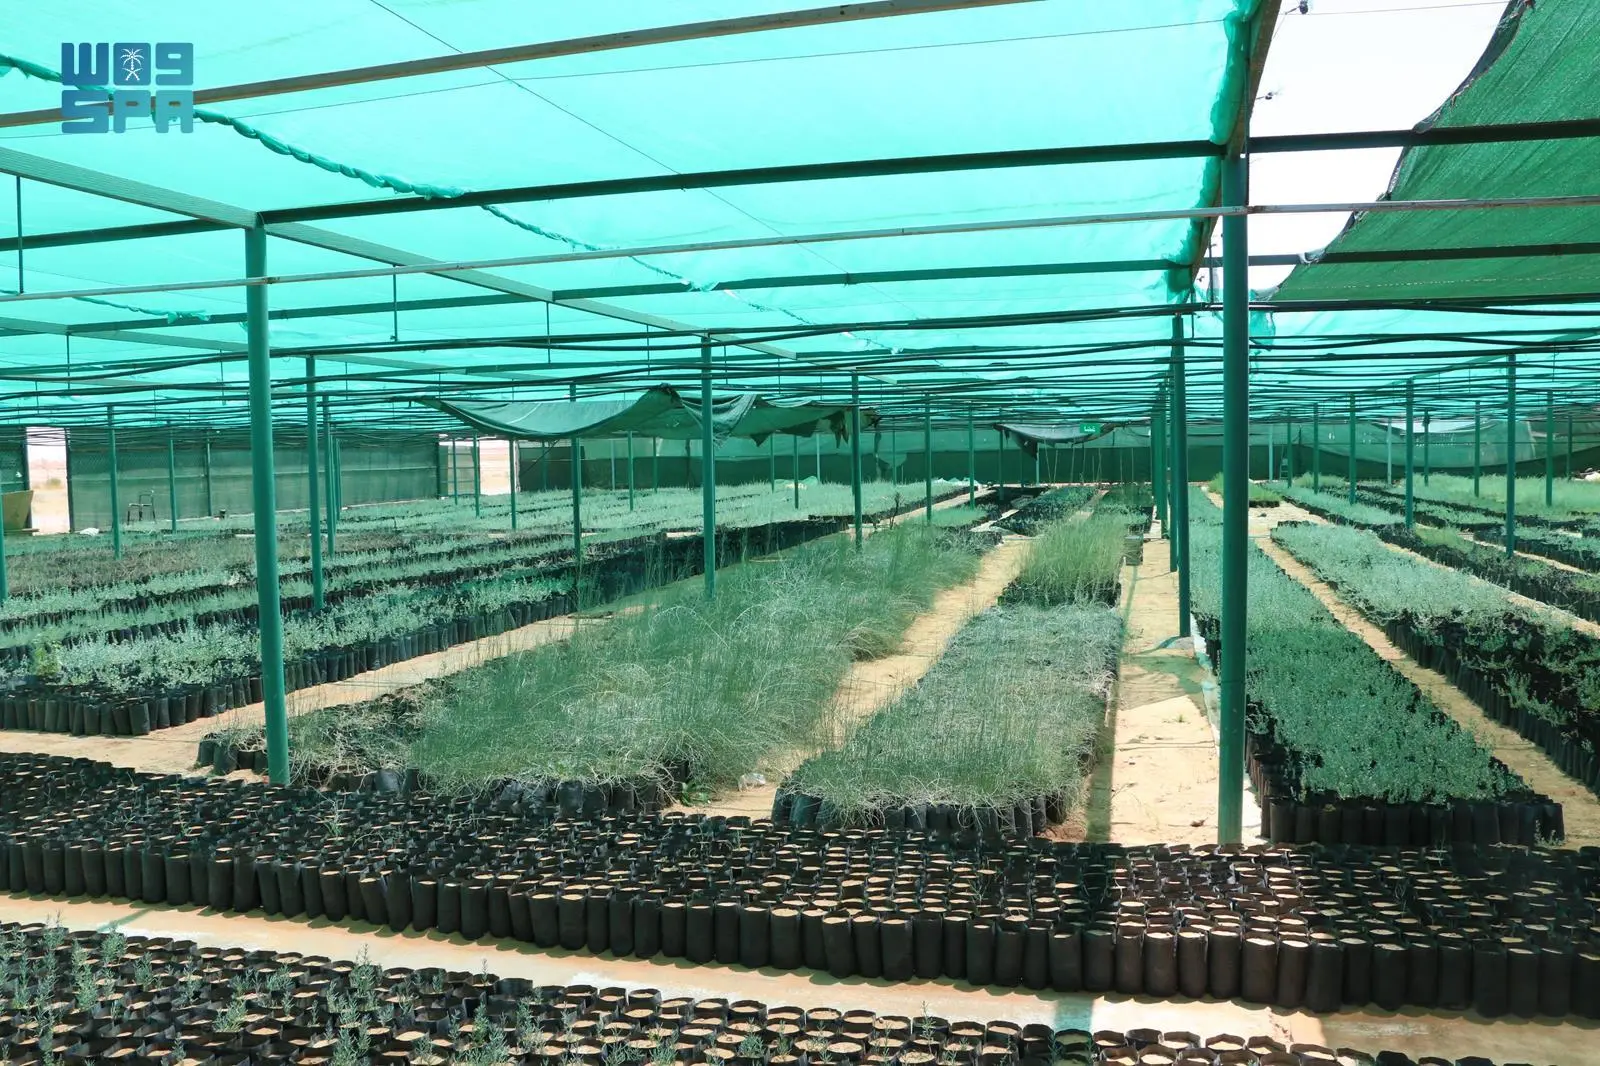 15 مليون شتلة ينتجها مركز تنمية الغطاء النباتي بالجوف سنويًا